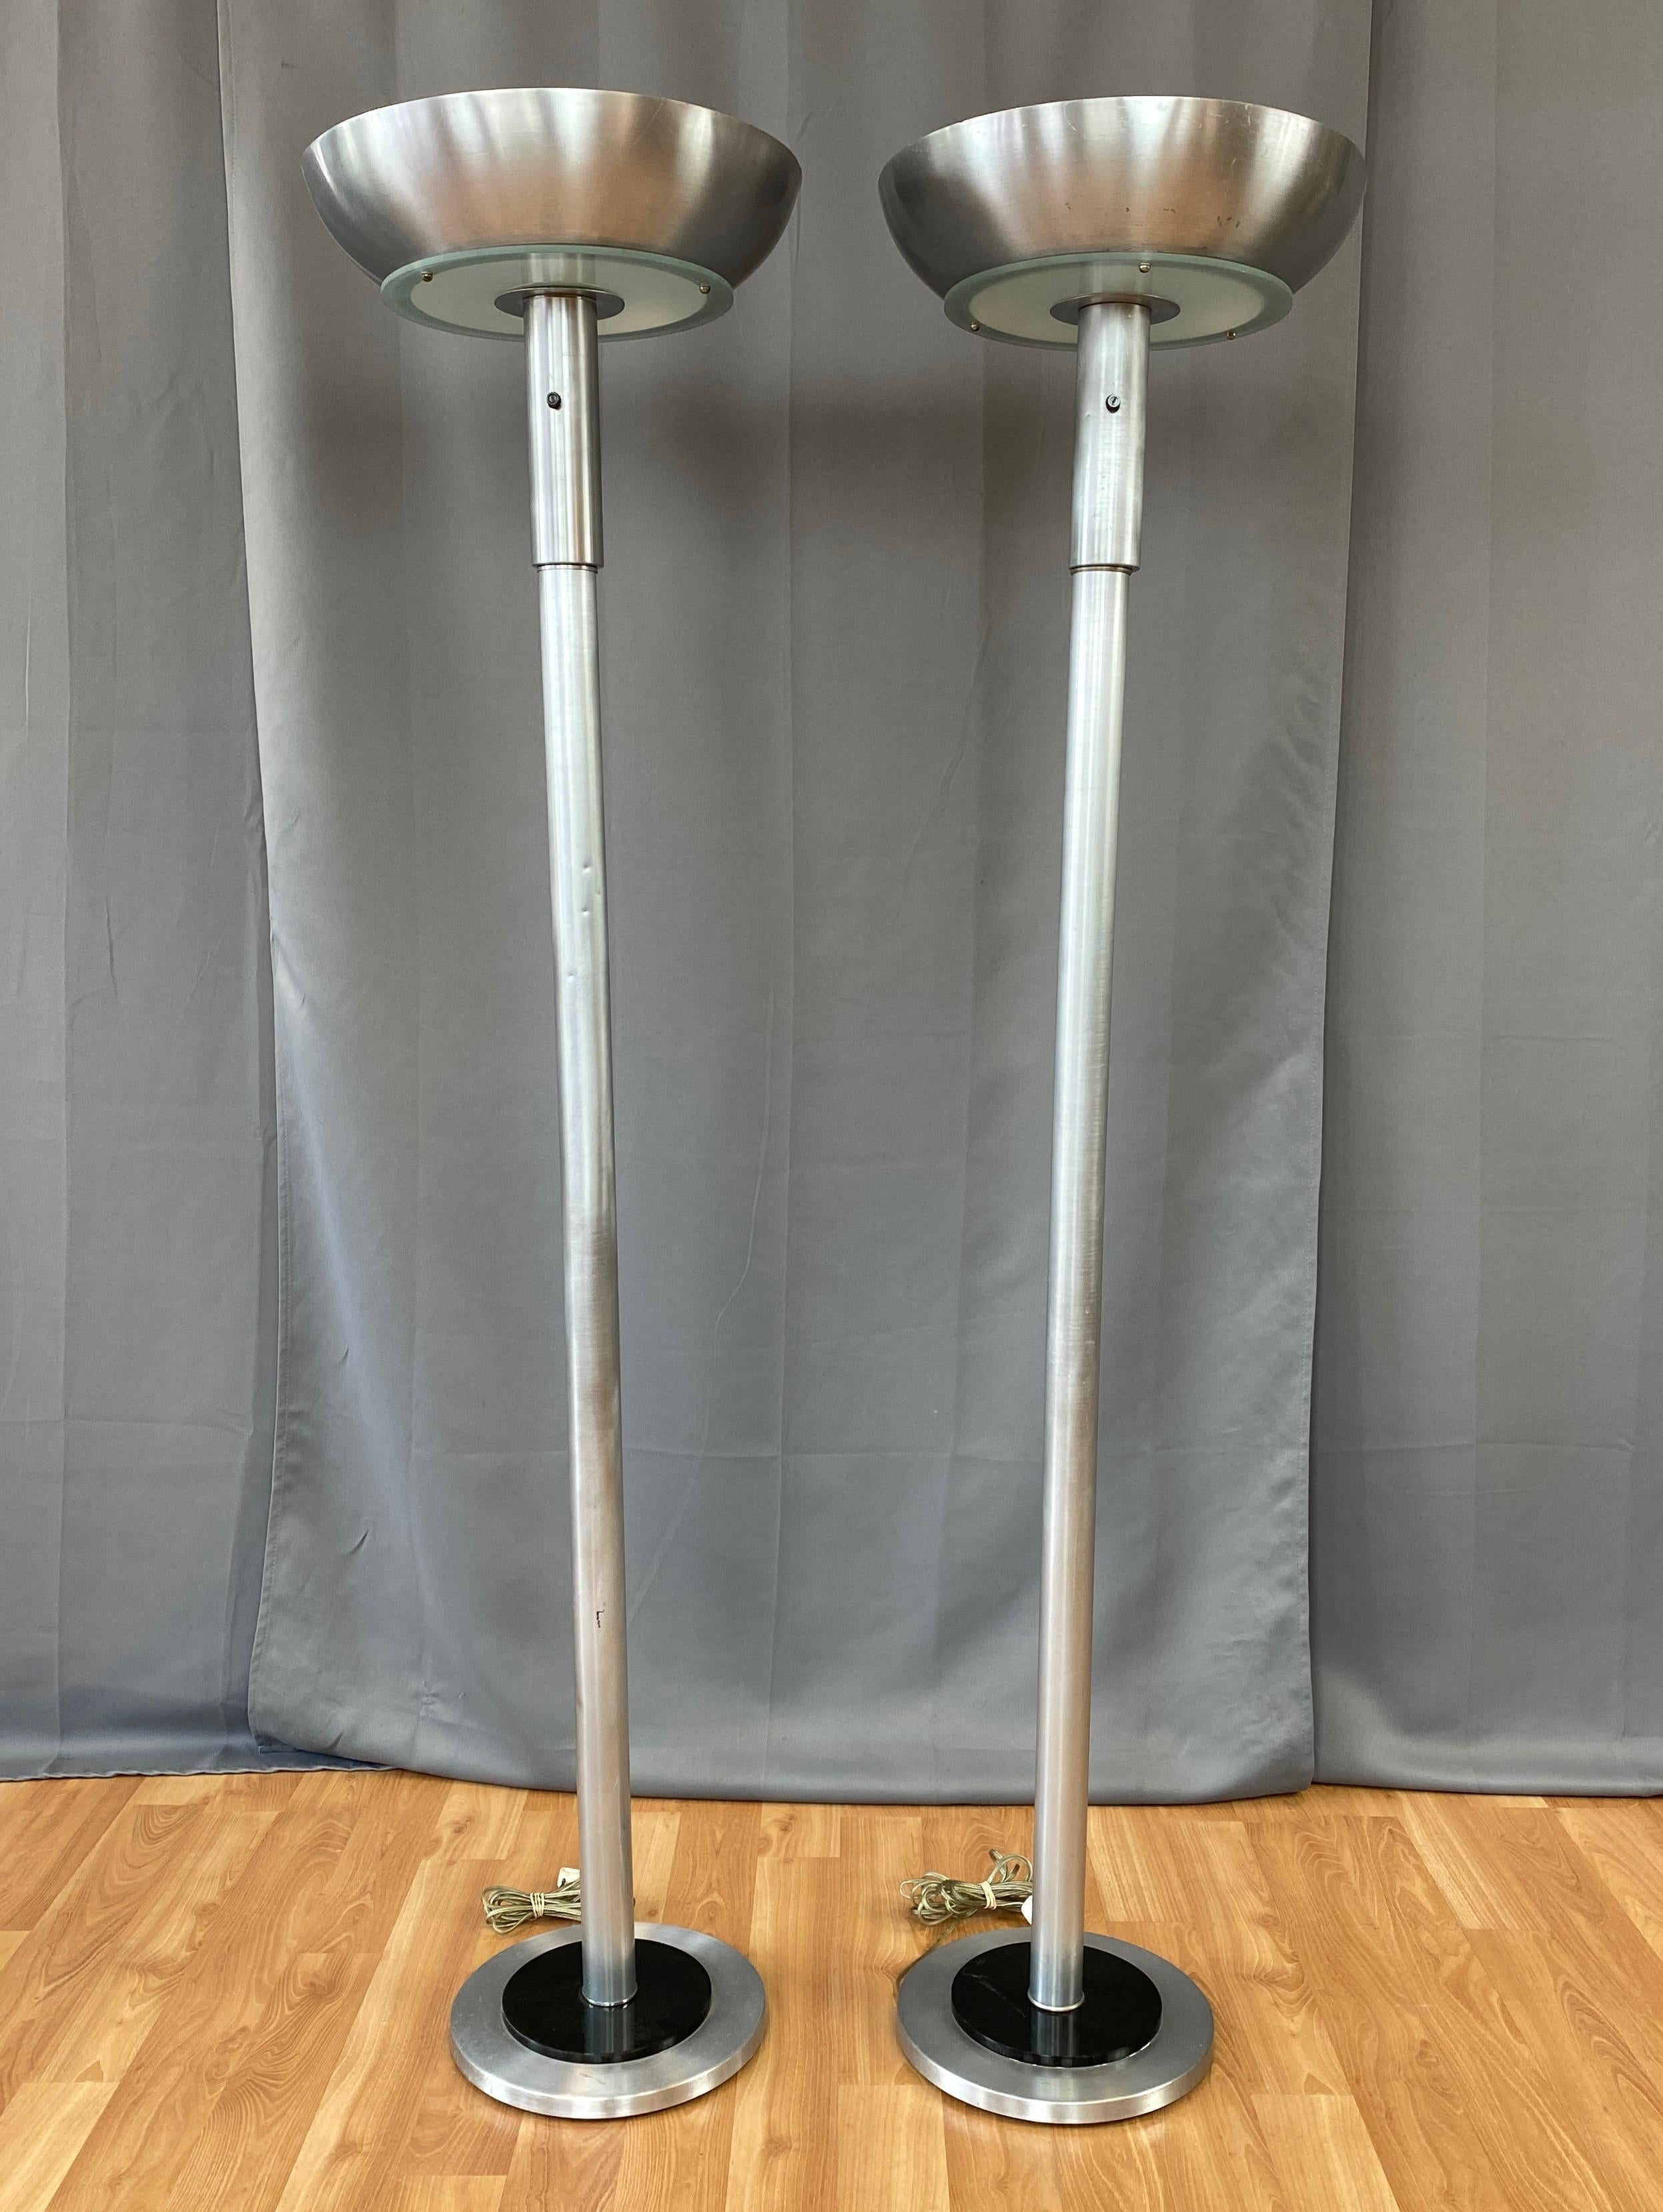 Ein hübsches Paar seltener Stehlampen aus Aluminium im Stil des Maschinenzeitalters oder des Art déco von Russel Wright aus der Mitte der 1940er Jahre.

Breite und tiefe Schale aus gedrehtem Aluminium mit offenem Boden auf einem Diffusor aus